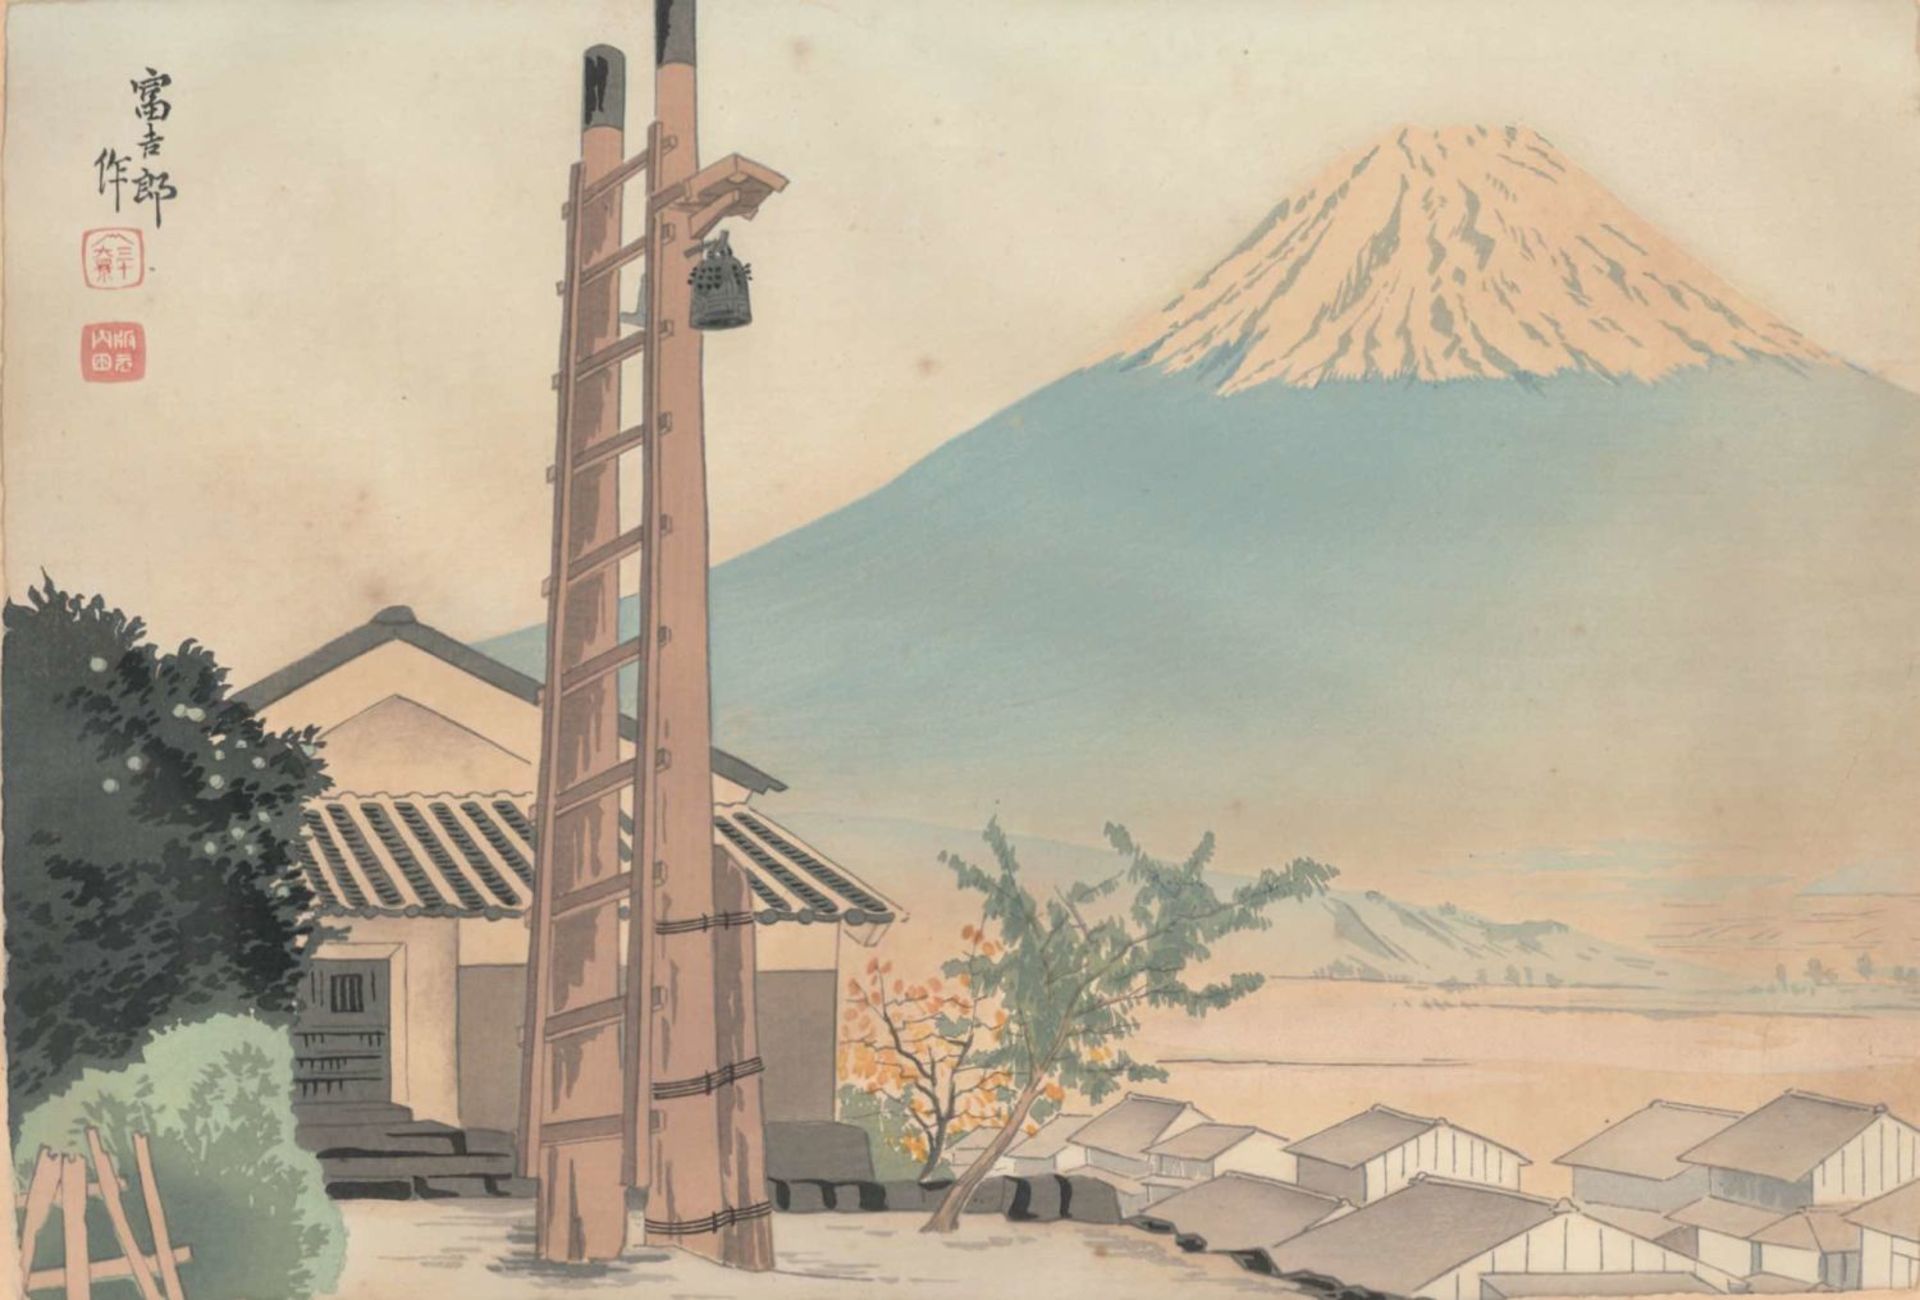 Iwabuchi city, From the series views of Mount Fuji, Tokuriki Tomikichiro 1902-1999